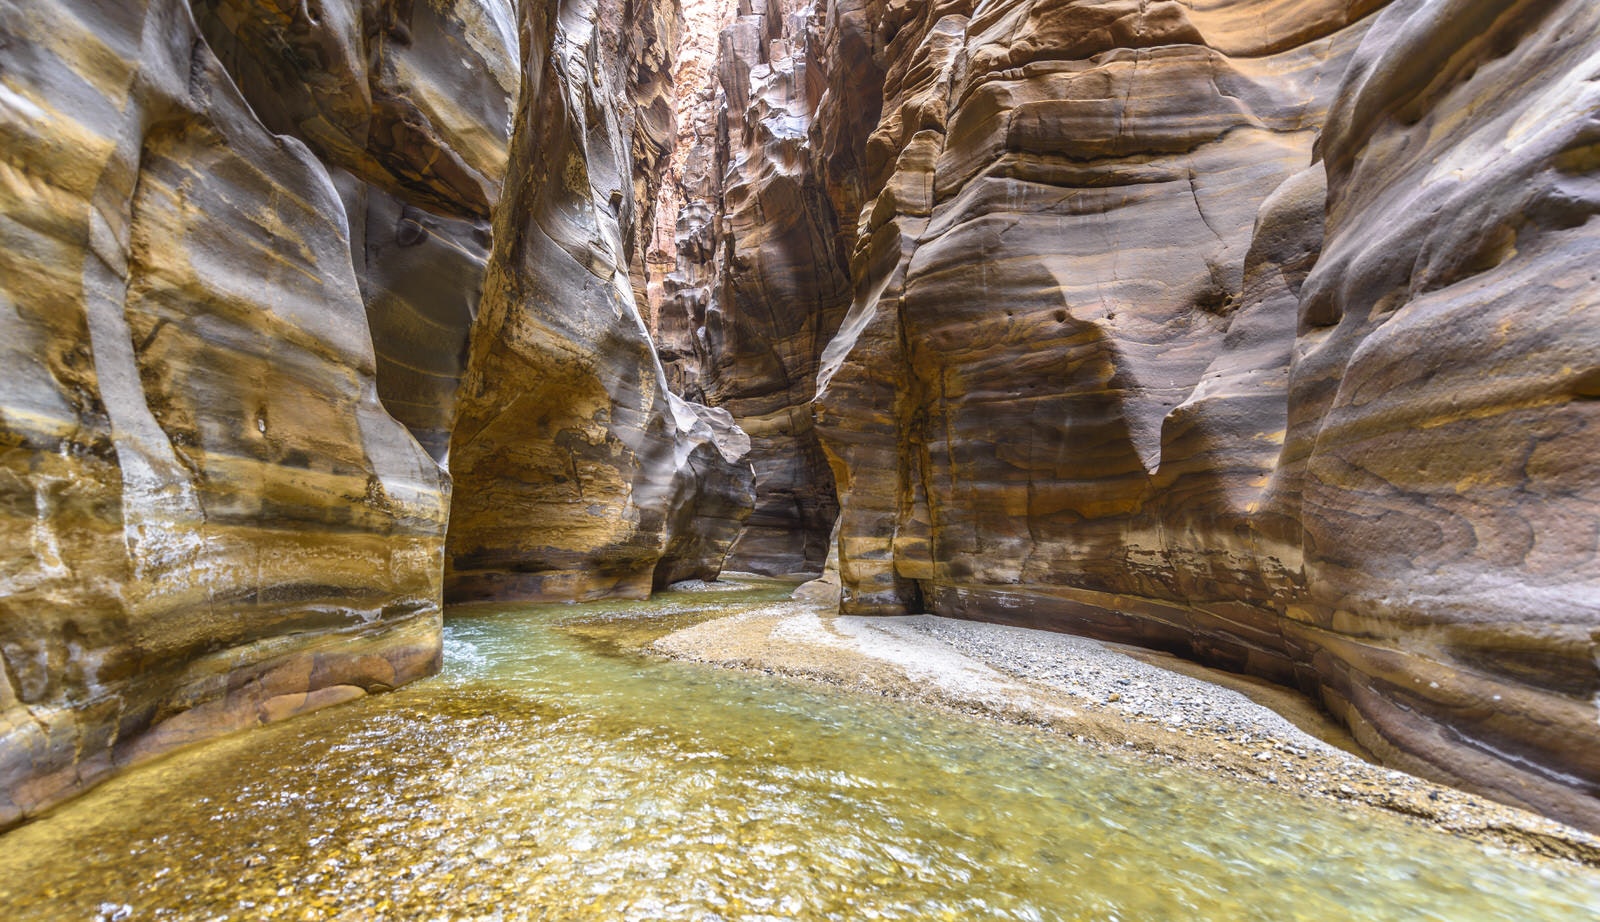 Features - Grand Canyon of Jordan,Wadi al mujib Natural Reserve